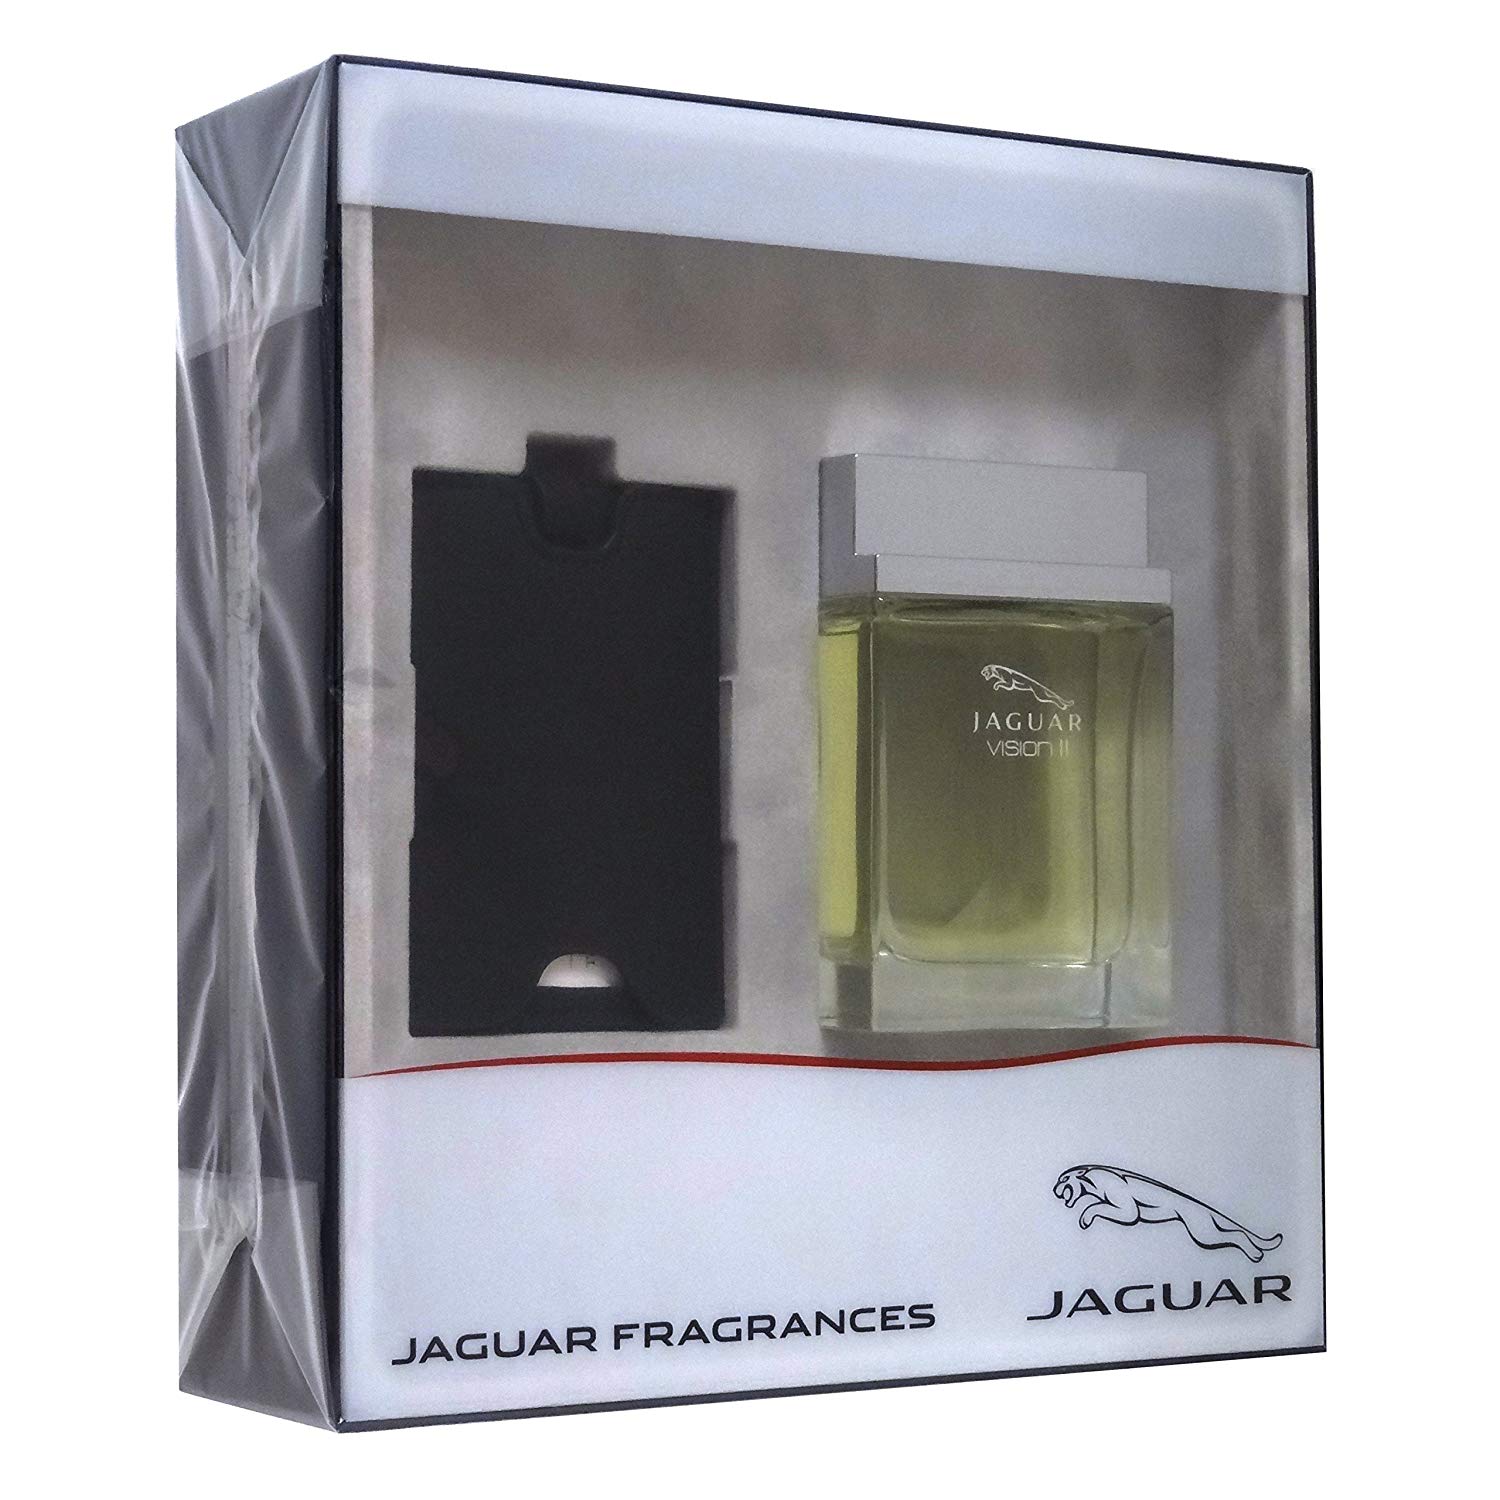 Jaguar Vision II Gift Set 100ml Eau de toilette EDT Spray + Luggage Tag